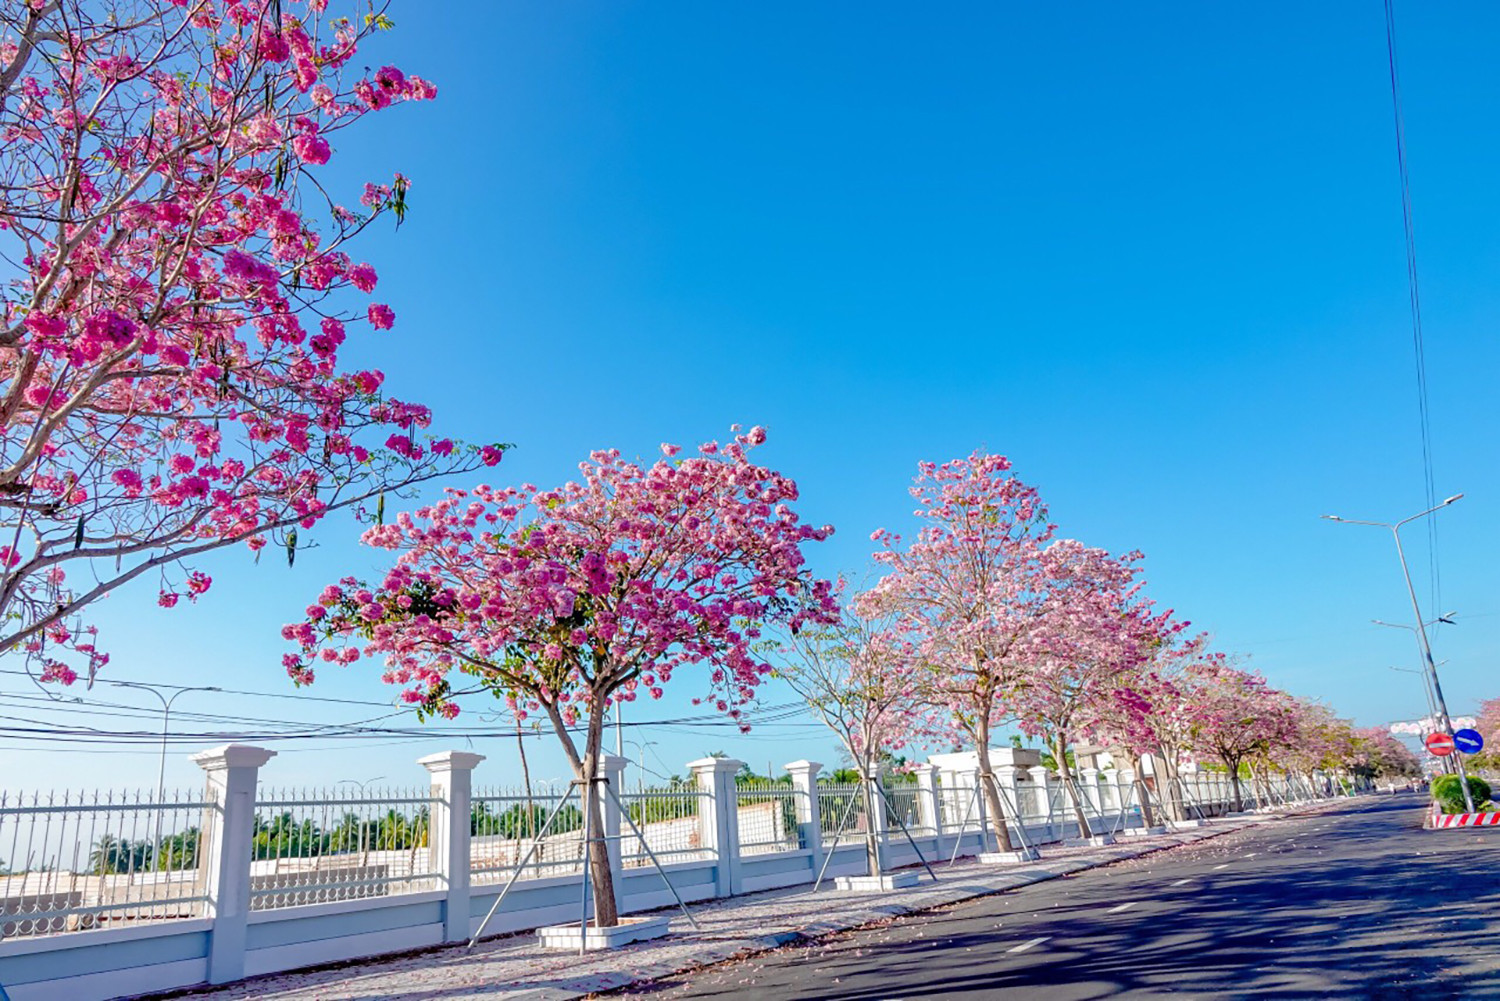 Từ năm 2019, Sóc Trăng được nhiều du khách biết đến nhờ những hàng kèn hồng lần đầu tiên đồng loạt nở hoa rực rỡ